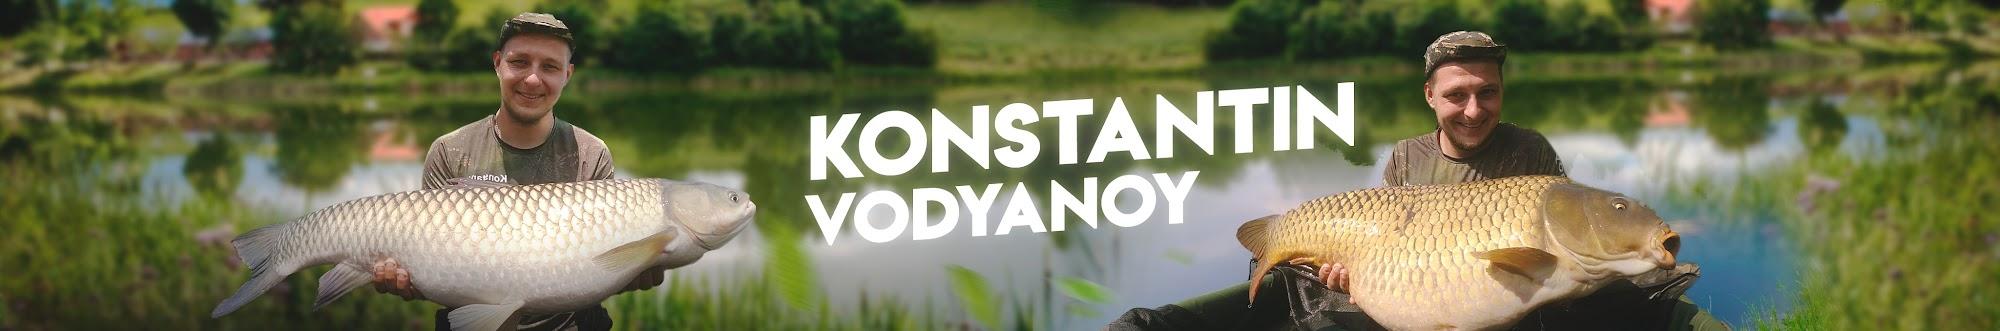 Konstantin Vodyanoy